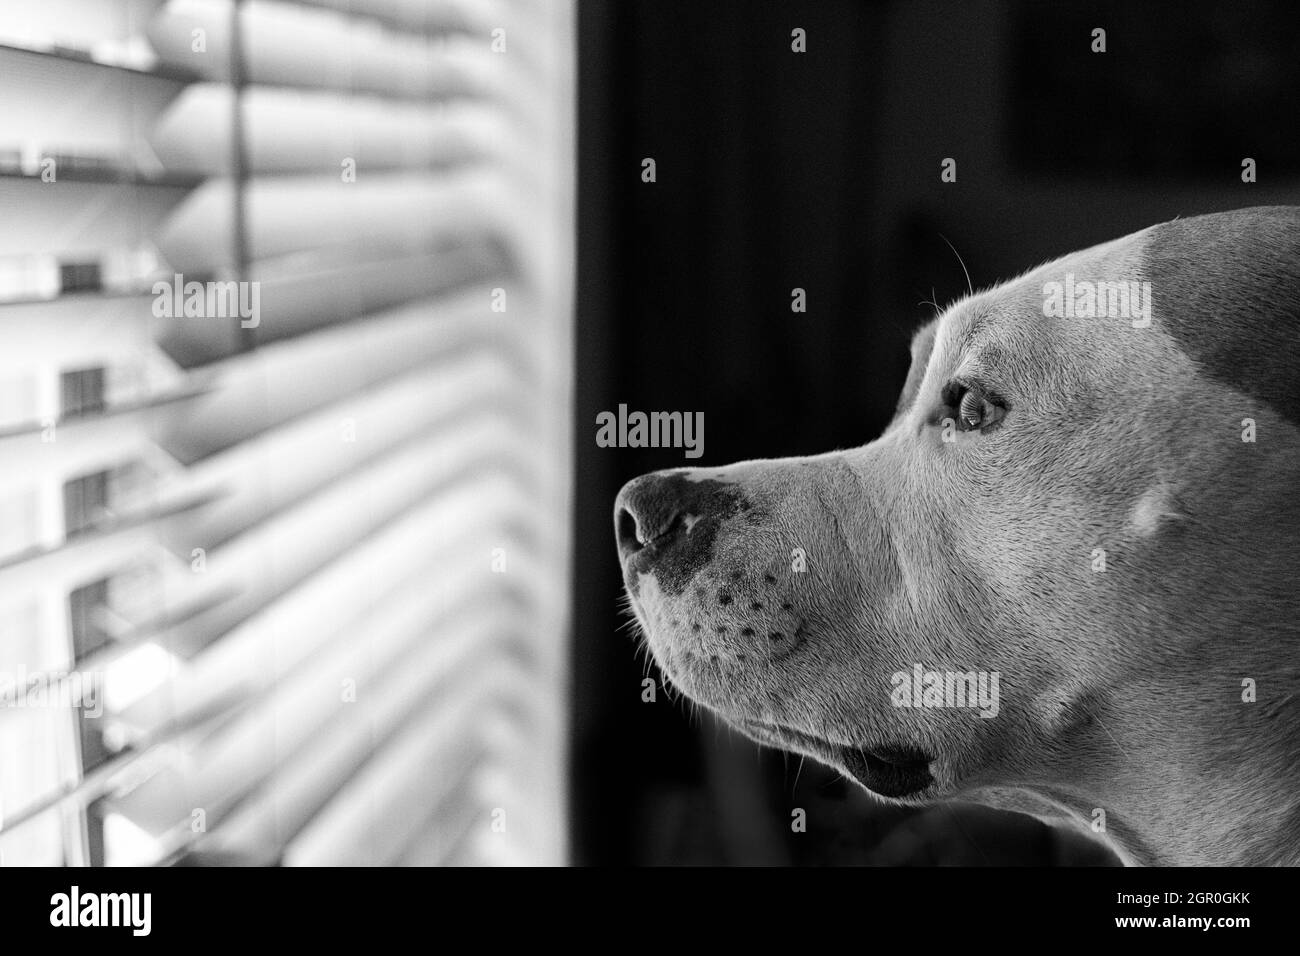 Gros plan d'un chien mixte (American Staffordshire Pit Bull Terrier et American Pit Bull Terrier) (Canis lupus familiaris) en regardant par la fenêtre Banque D'Images